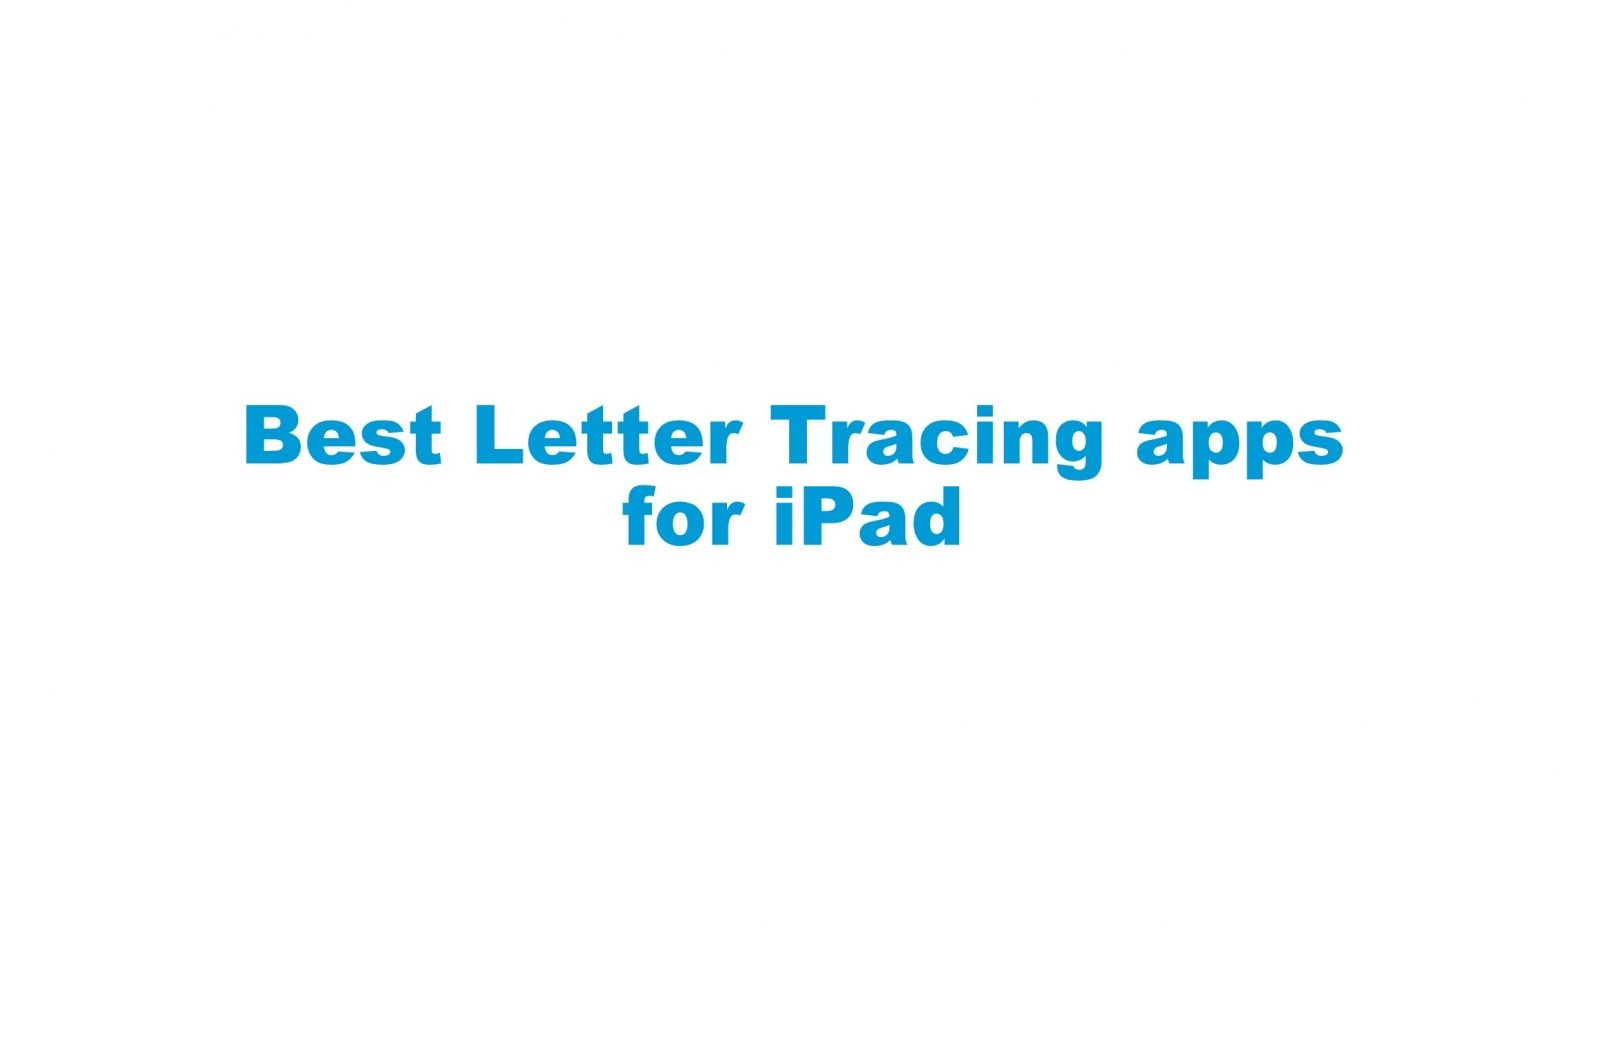 أفضل تطبيقات تتبع الرسائل لأجهزة iPad [Updated 2021]